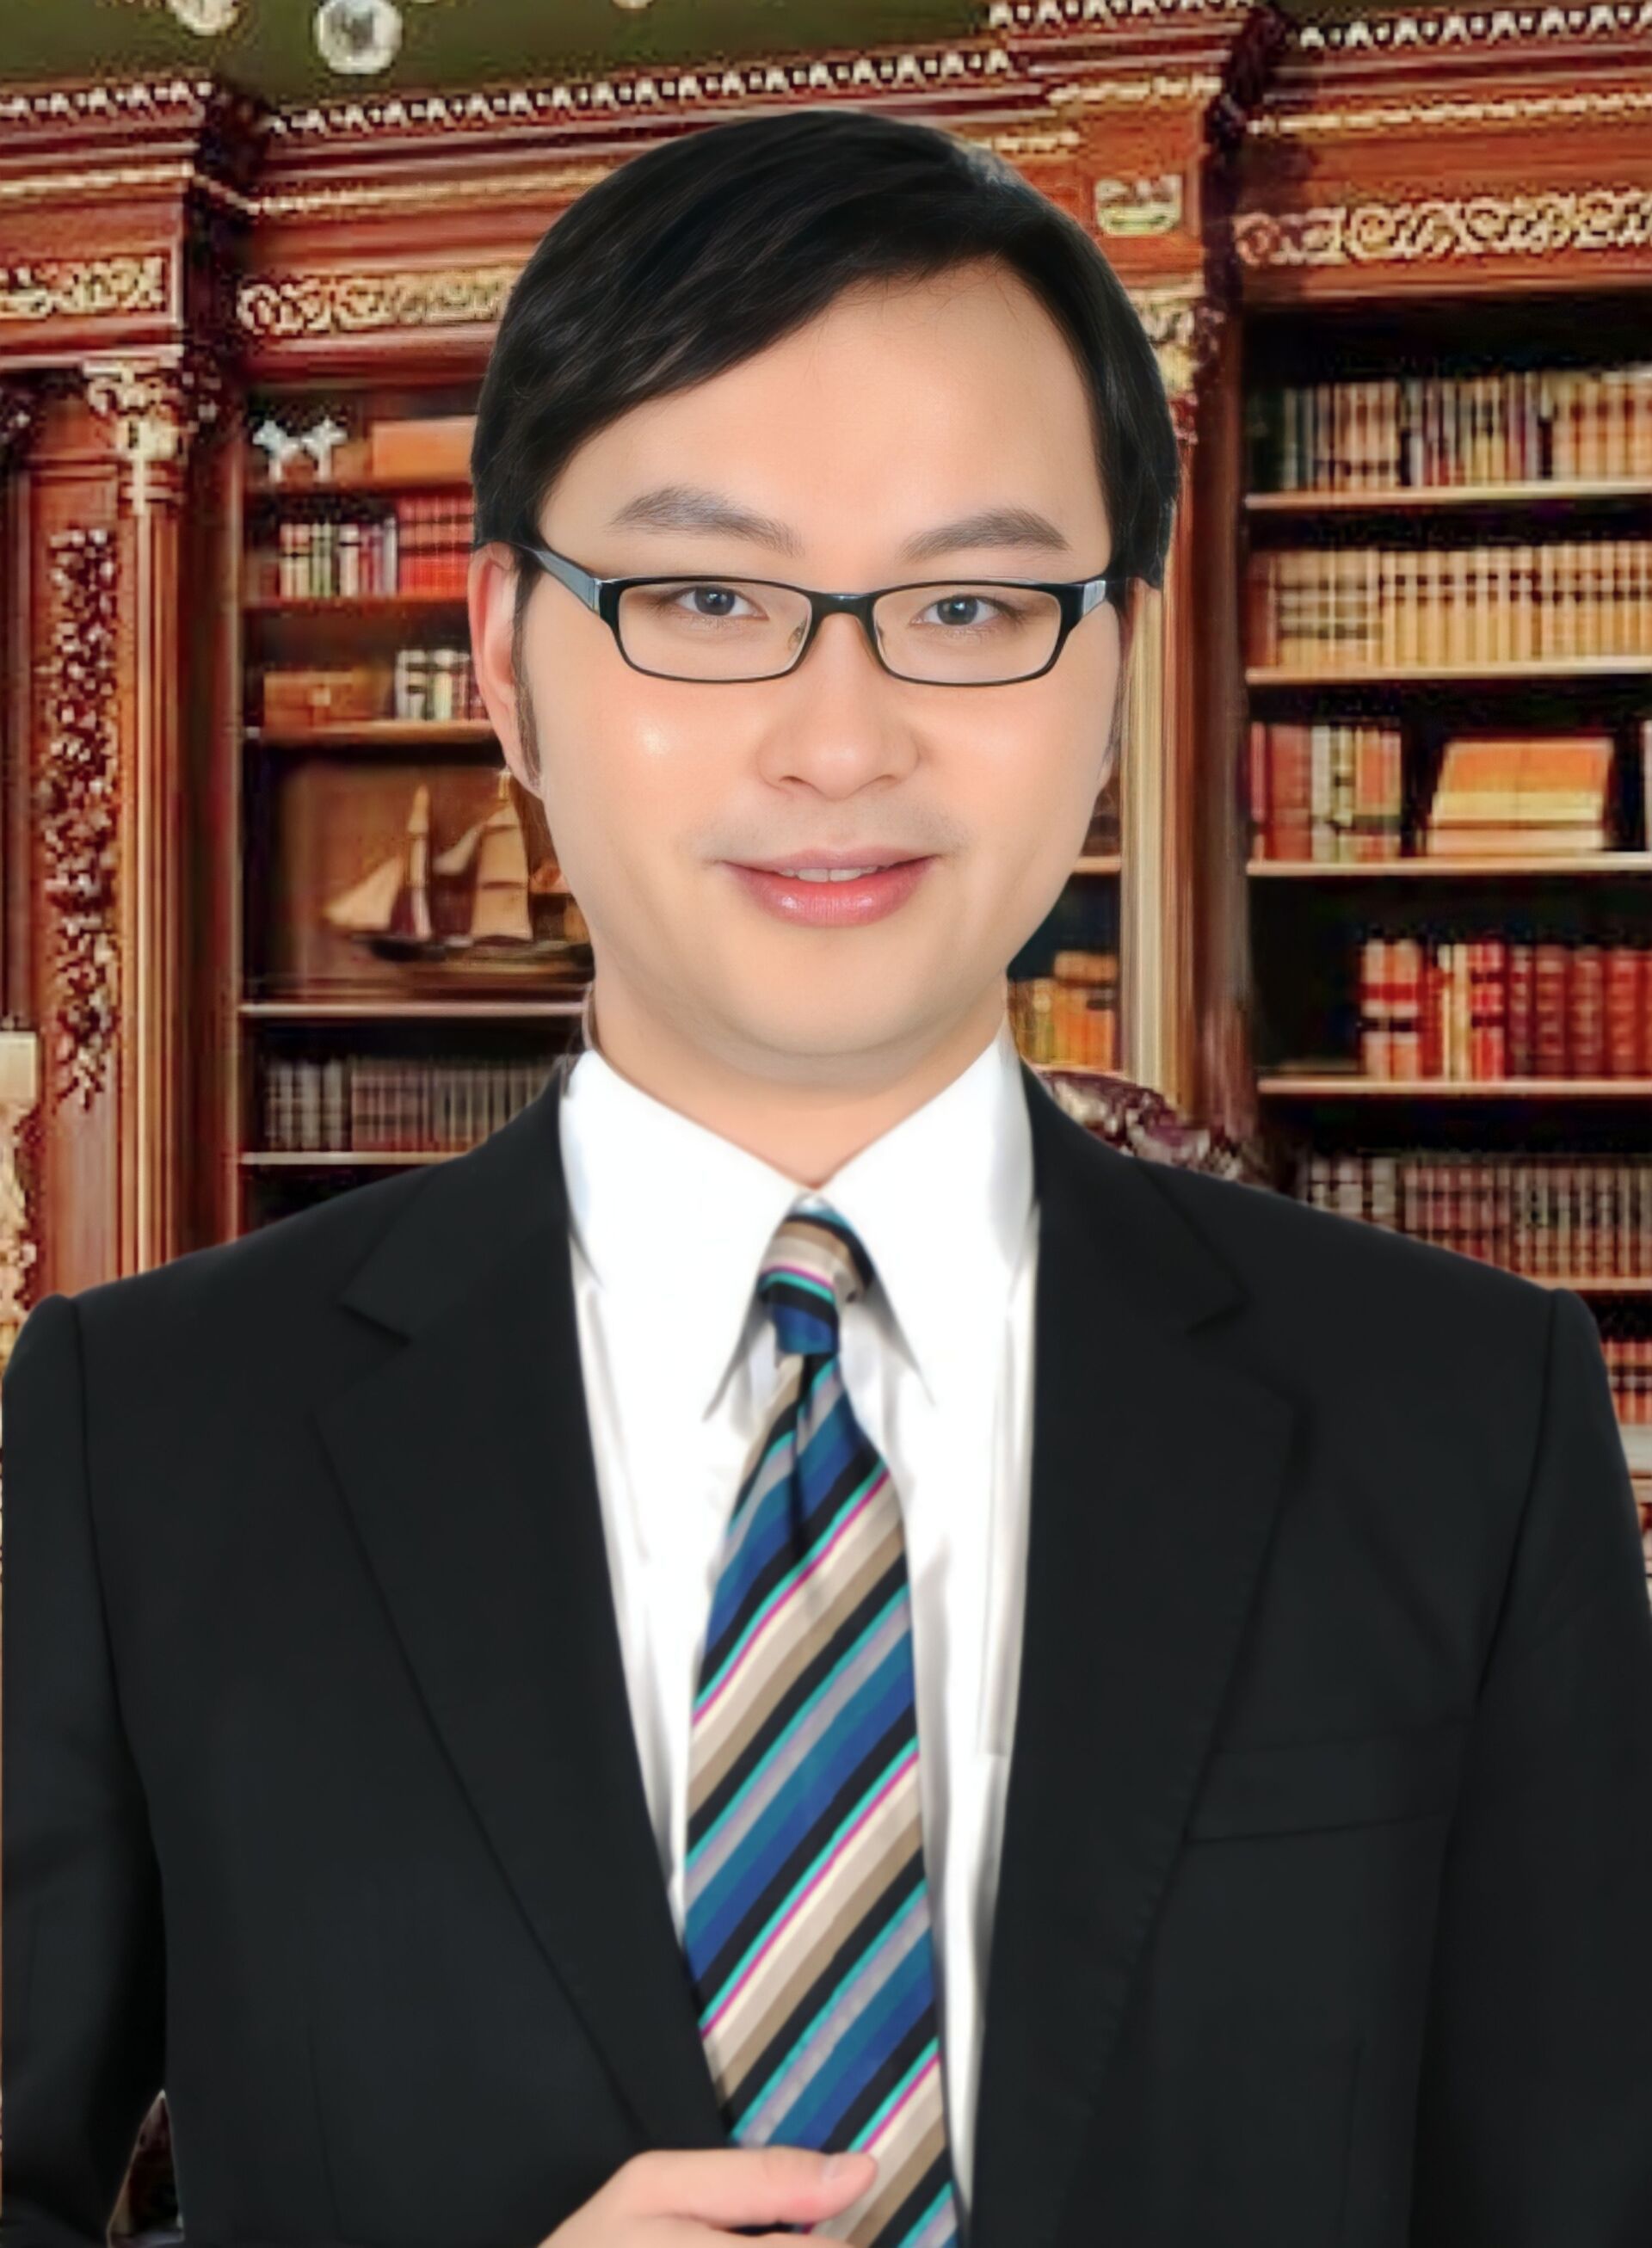 穿著西裝打著領帶的鍾一匡律師 (Henry Chung)站在書架前